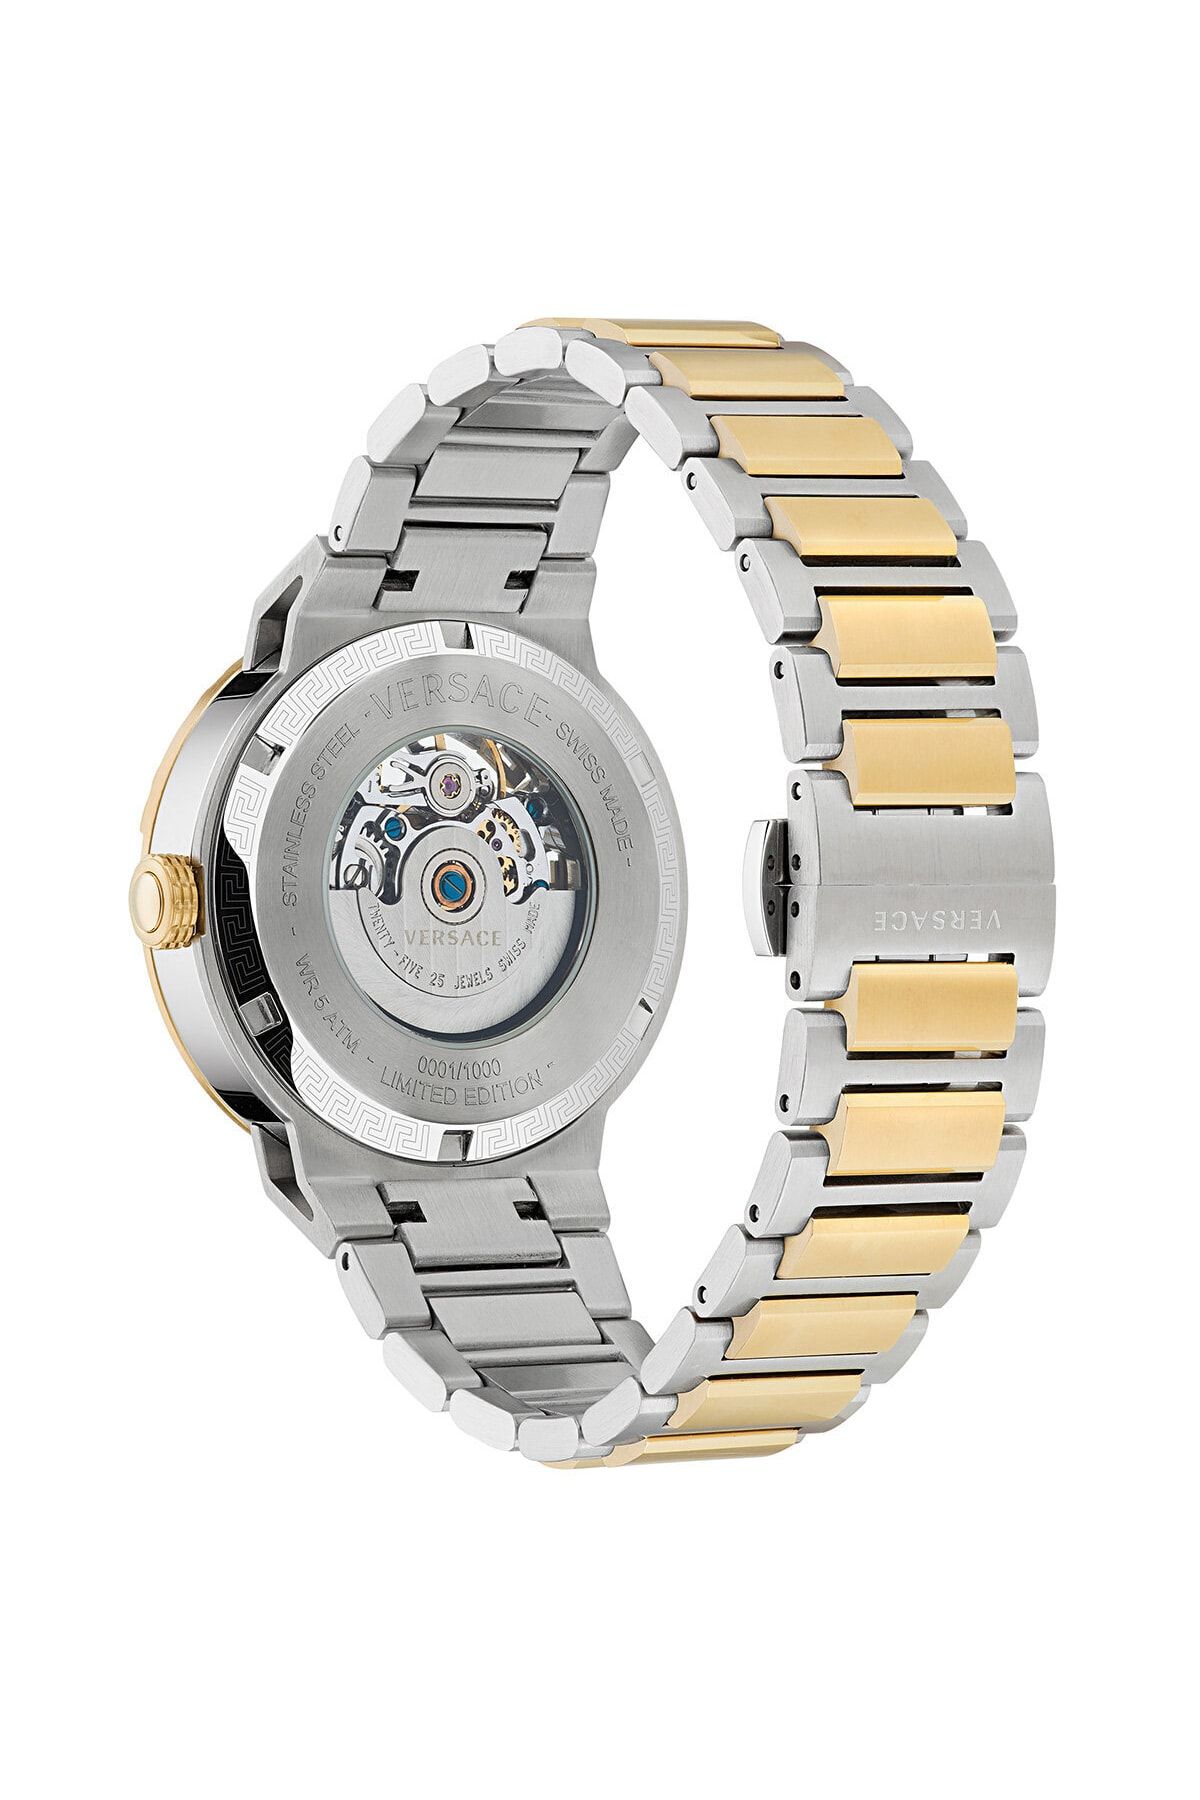 Versace ساعت مچی VRSCVE3G00122